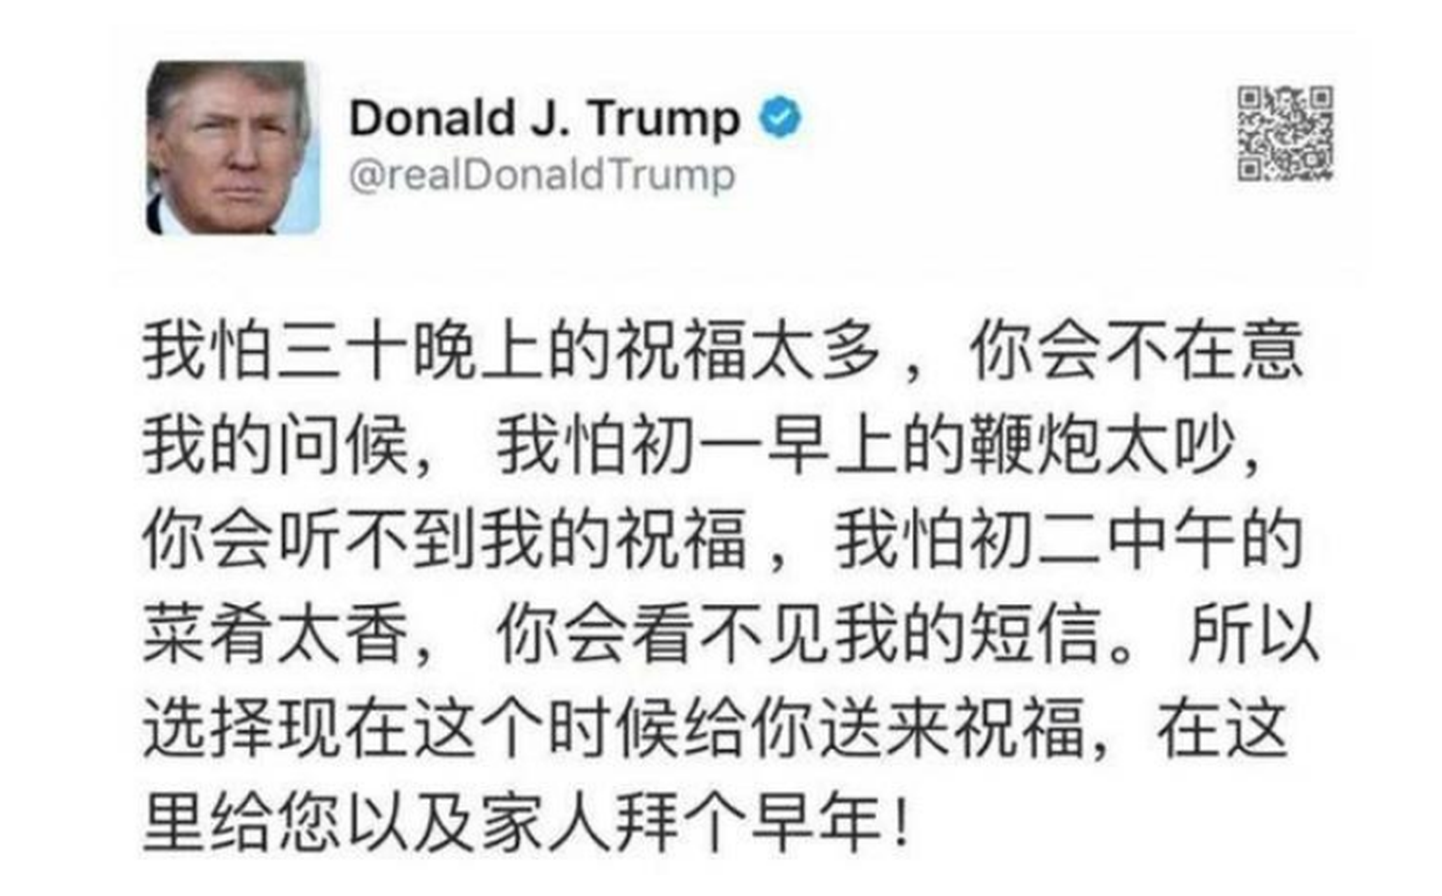 Donald Trumpi hiinakeelne libasõnum.